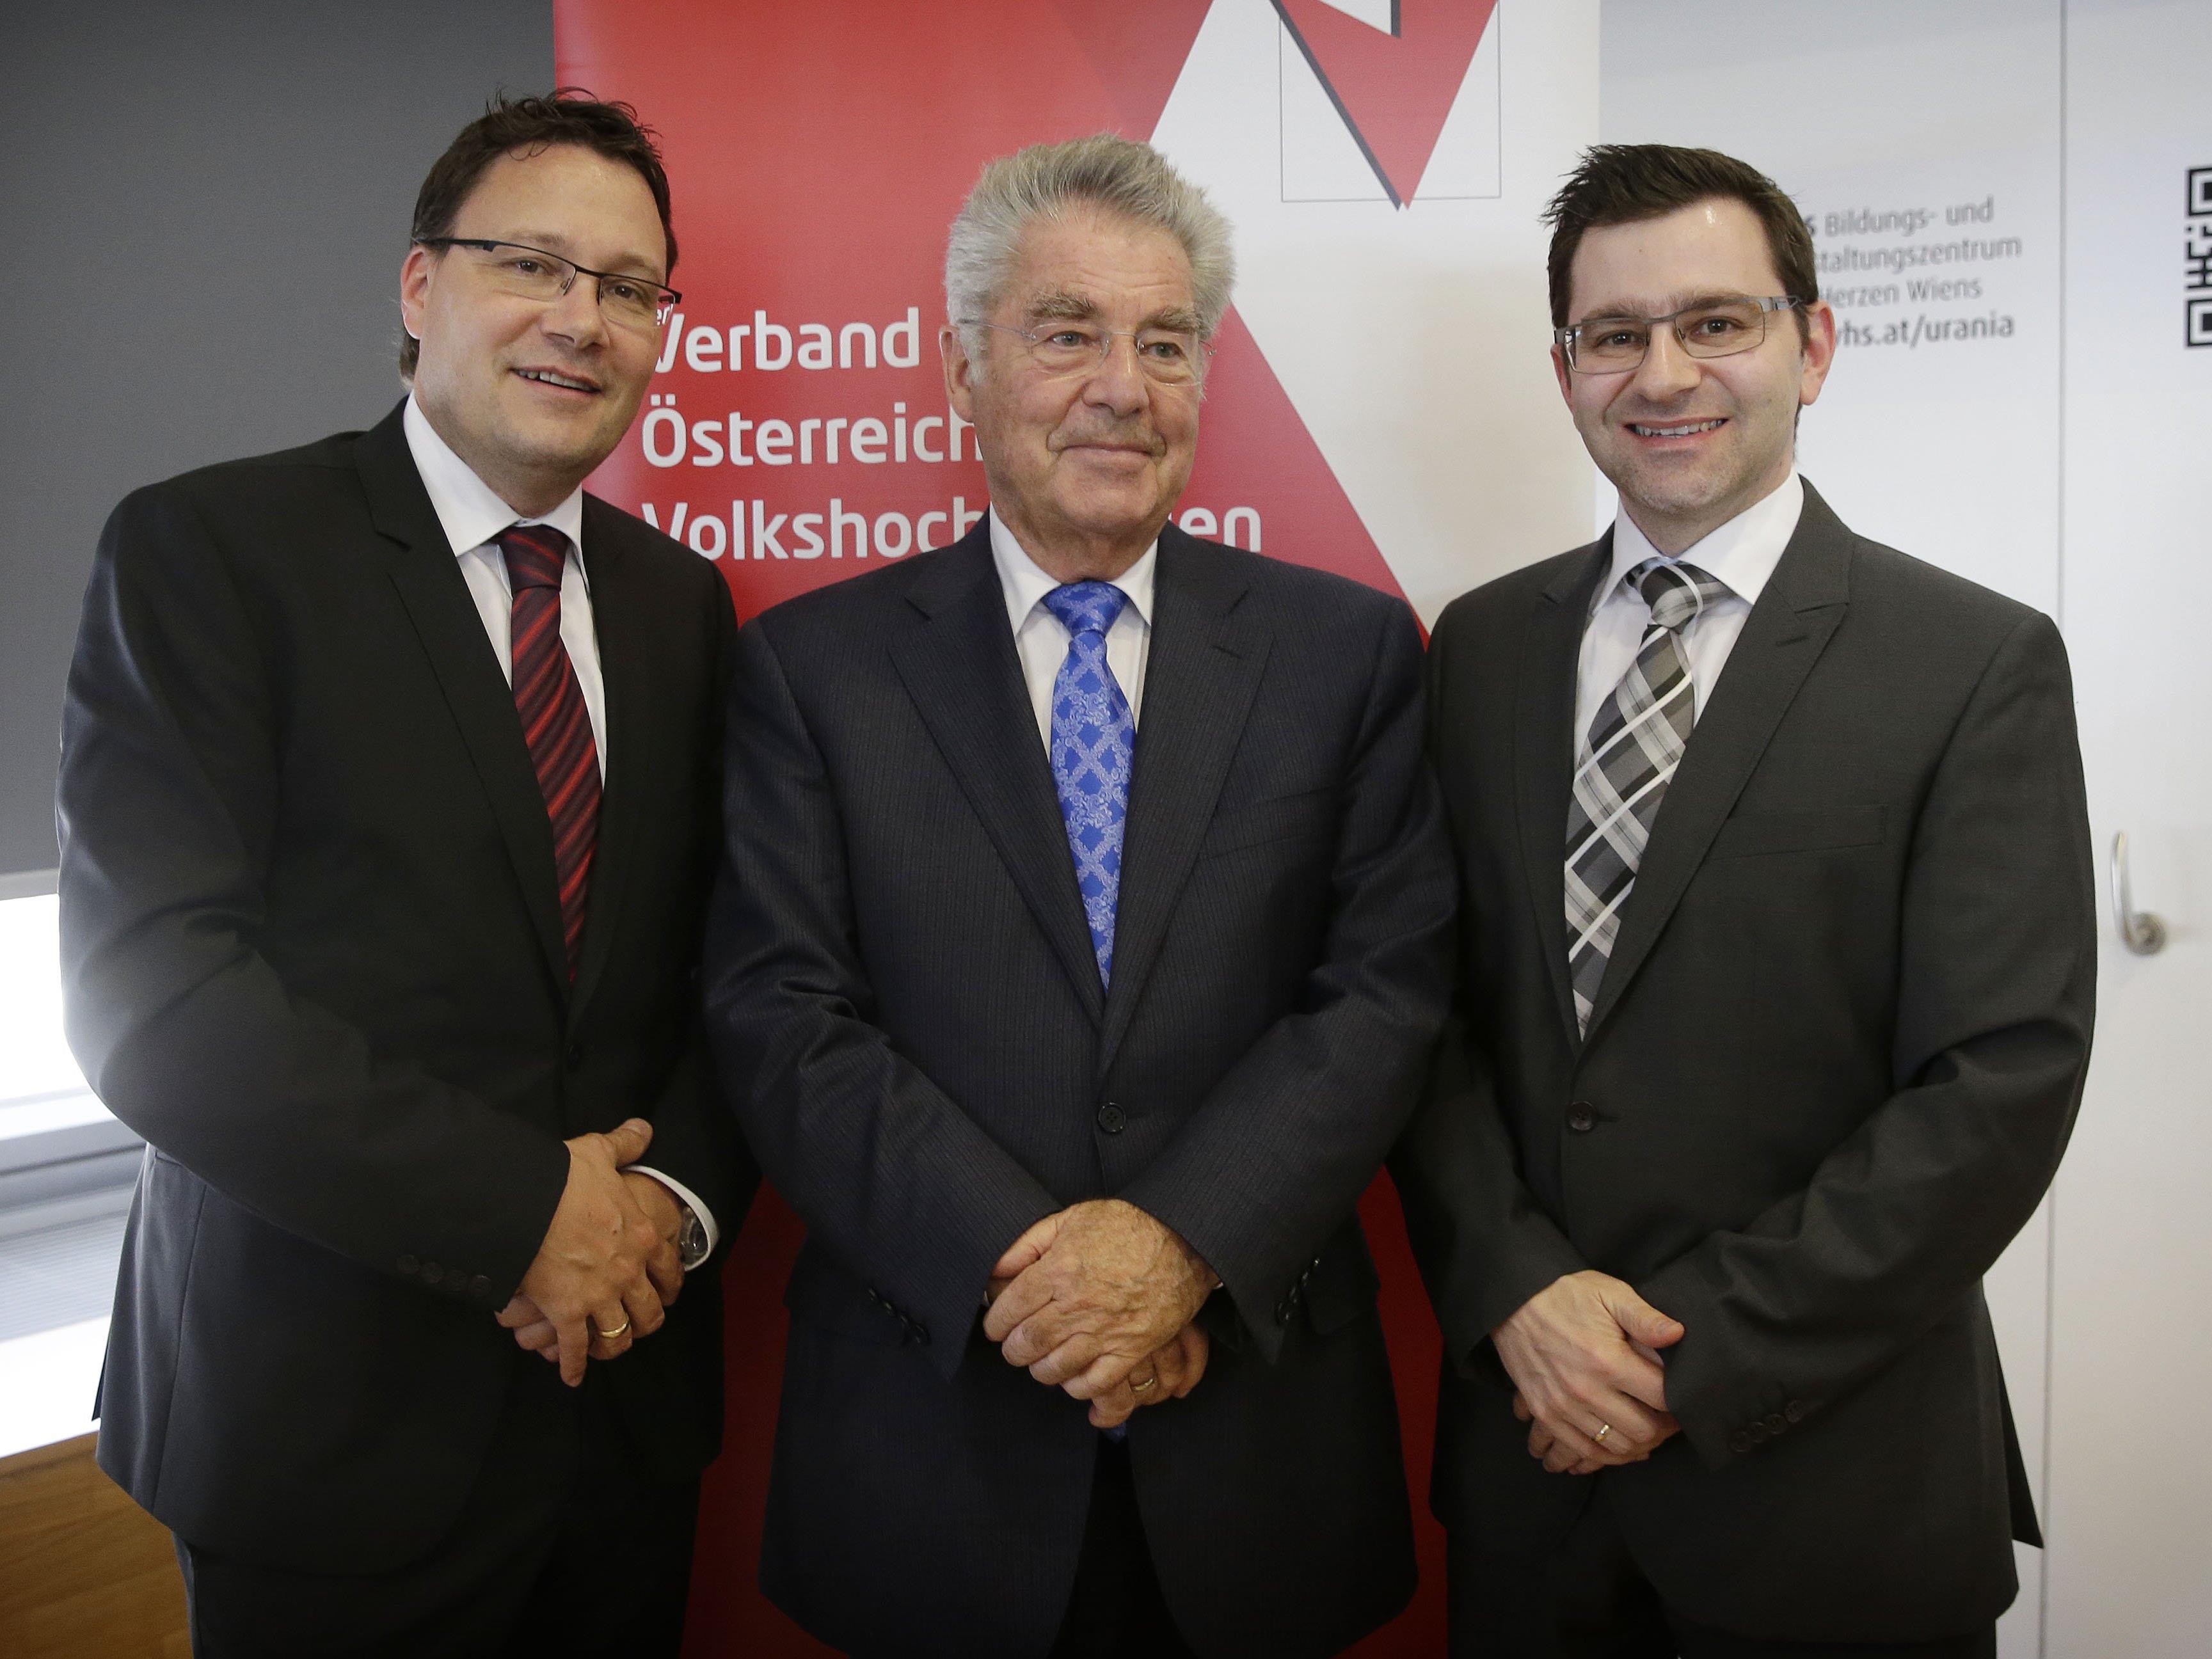 Die neugewählte Vorsitzende des Verbandes der Österreichischen Volkshochschulen, Bundespräsident Dr. Heinz Fischer mit den beiden Vorarlberger Vorstandsmitgliedern Mag. Fischnaller (links) und Dr. Grabher (rechts)